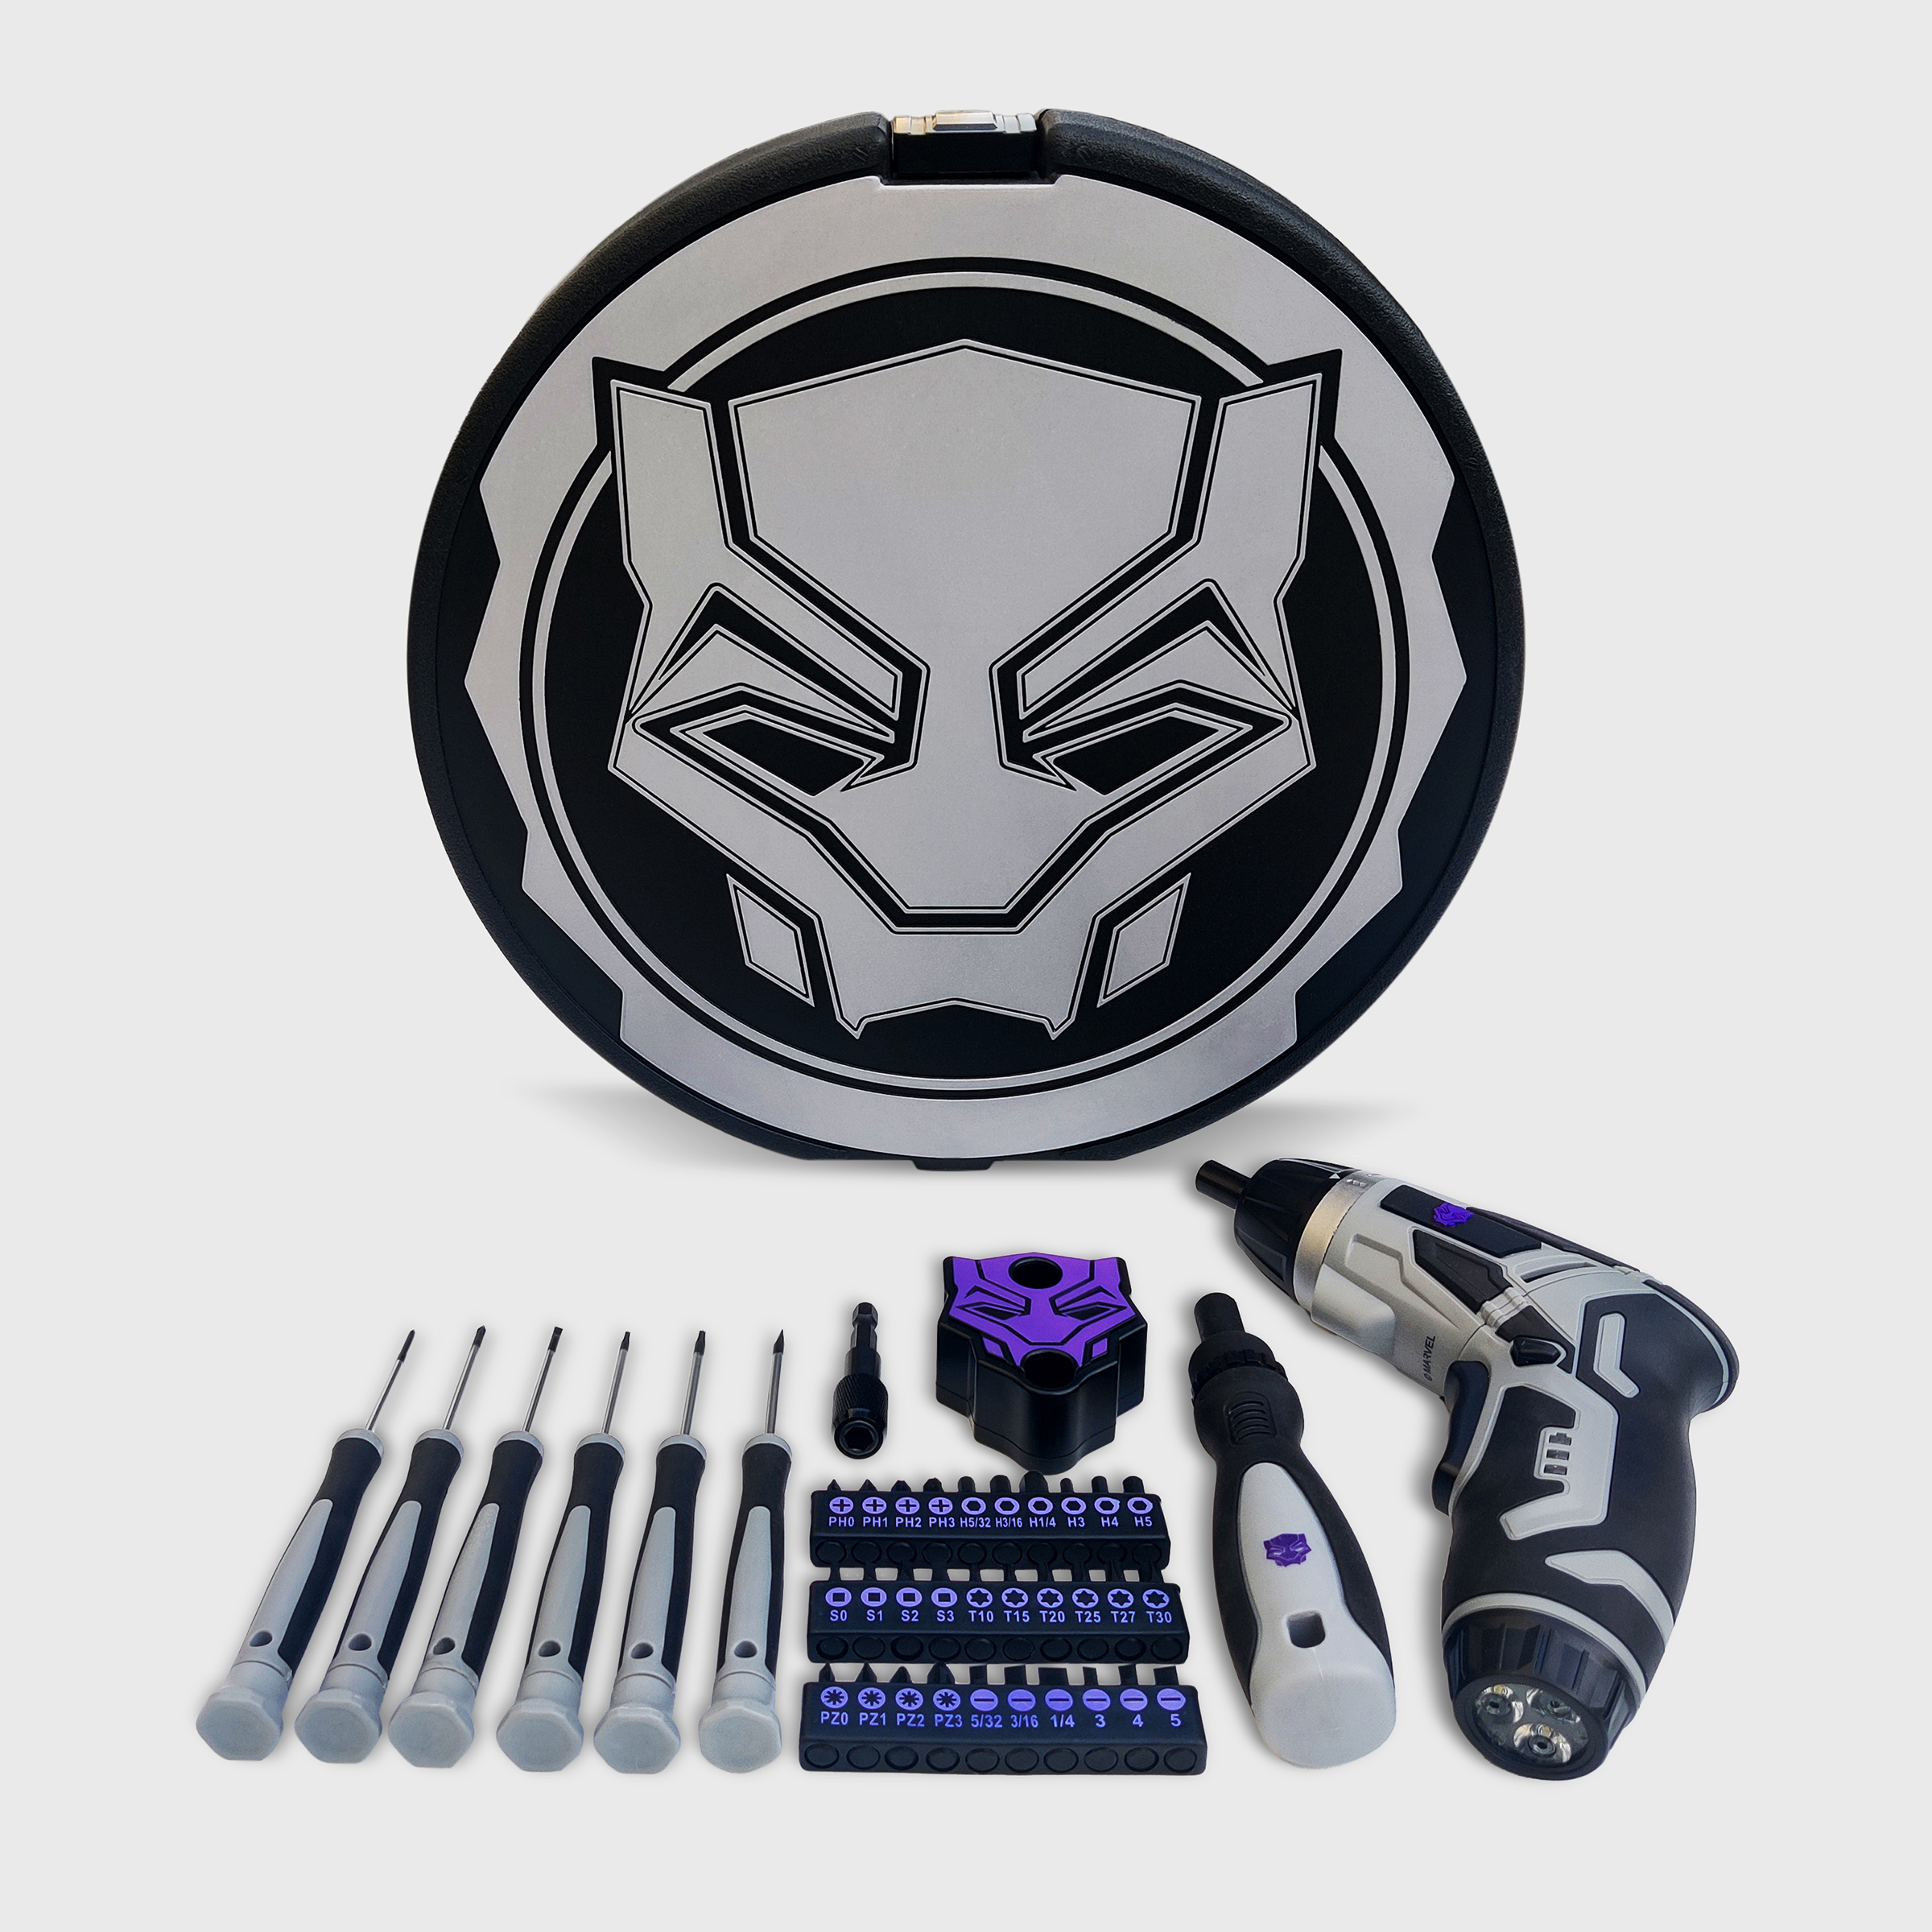 Marvel Black Panther Cordless 41pc 3.6v Power Screwdriver Set - image 1 of 9